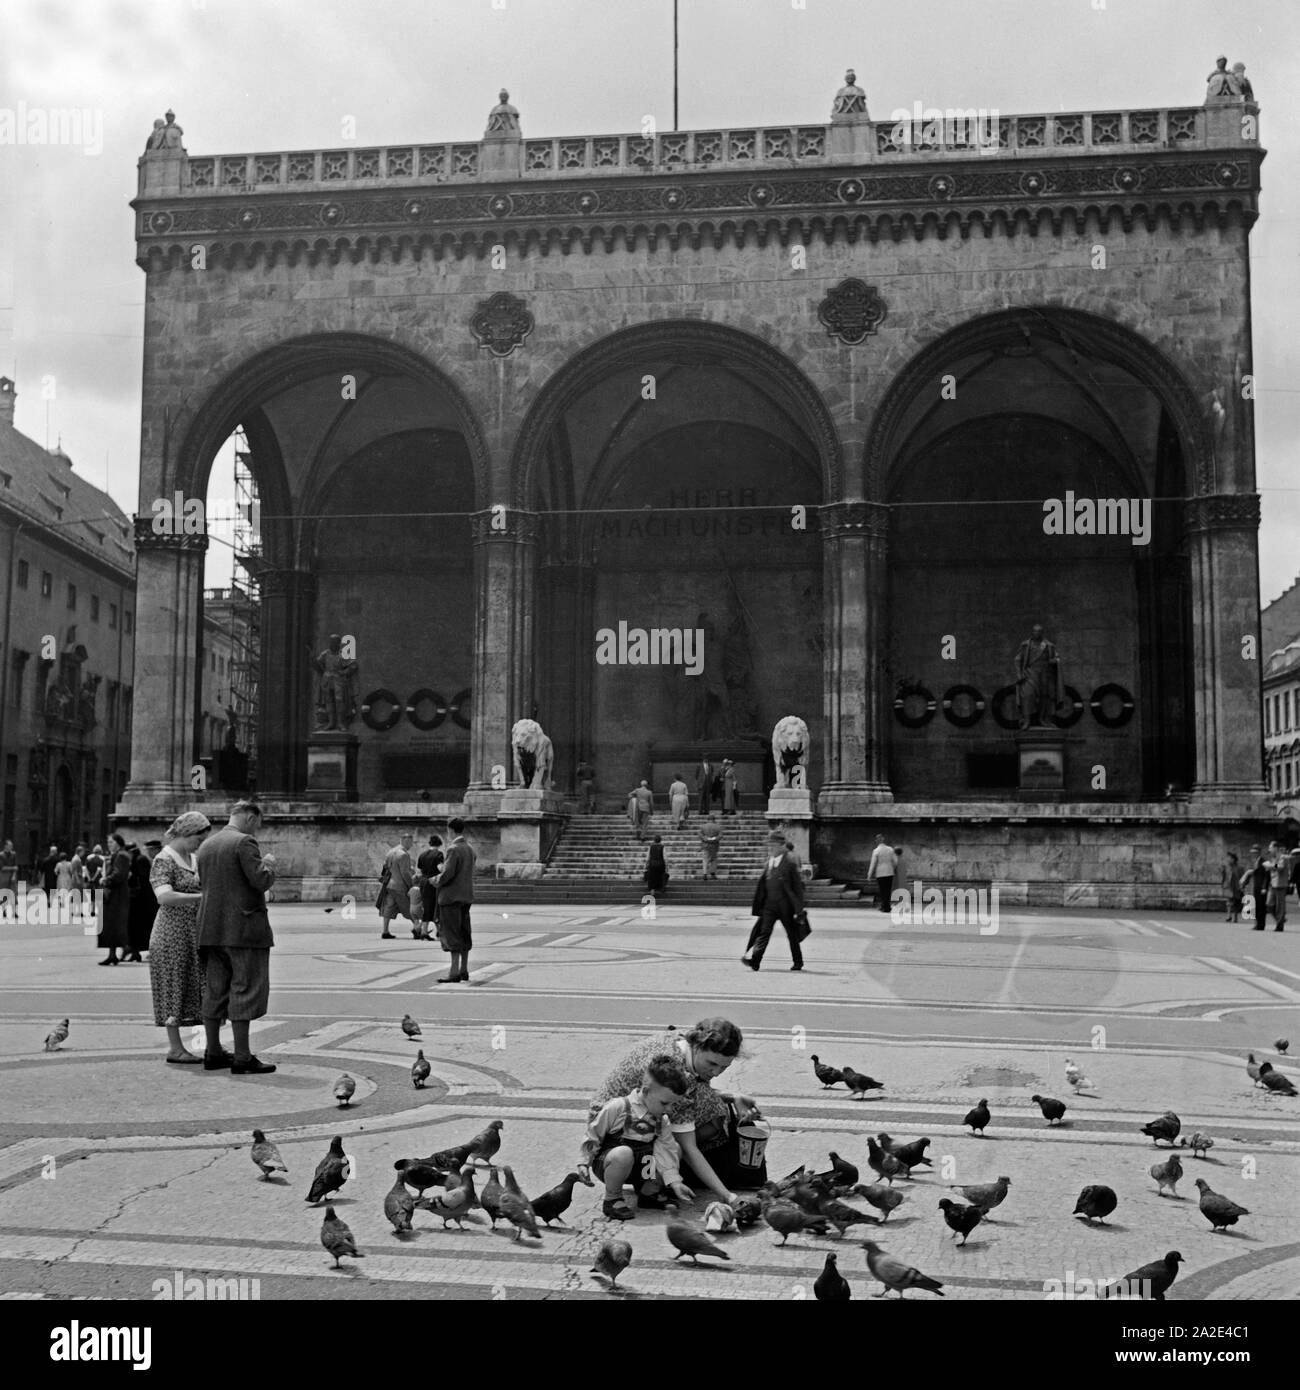 Die Feldherrnhalle auf dem Odeonsplatz in München, Deutschland 1930er Jahre. Feldherrhalle Halle auf dem Odeonsplatz Quadrat, München, Deutschland 1930. Stockfoto